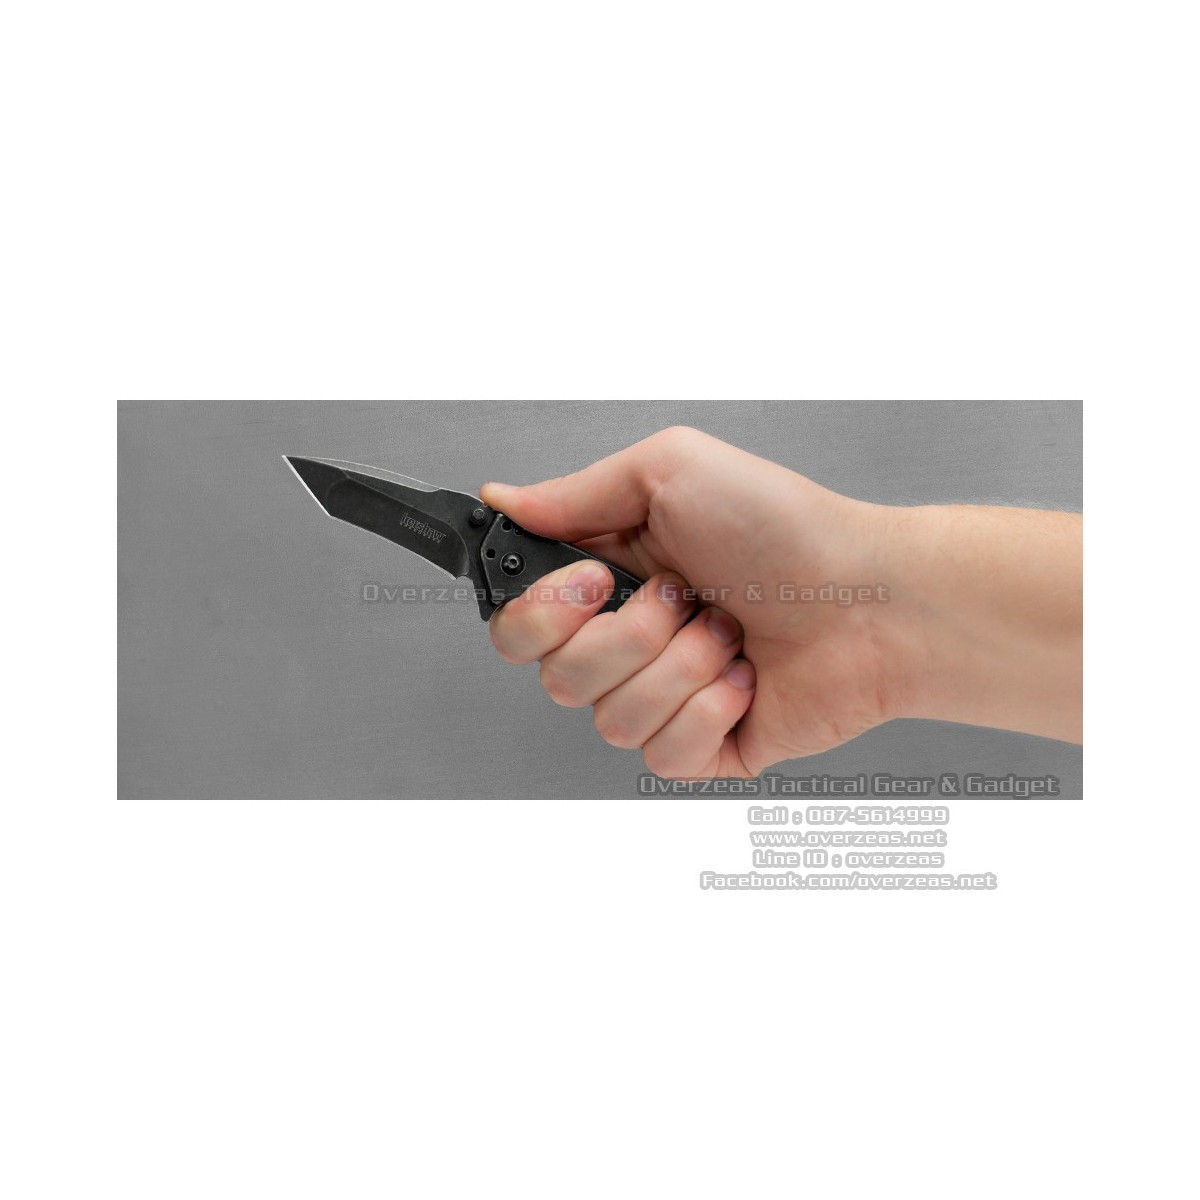 มีดพับ Kershaw Cryo Tanto Assisted Opening Knife (2.75" BlackWash) 1555TBW